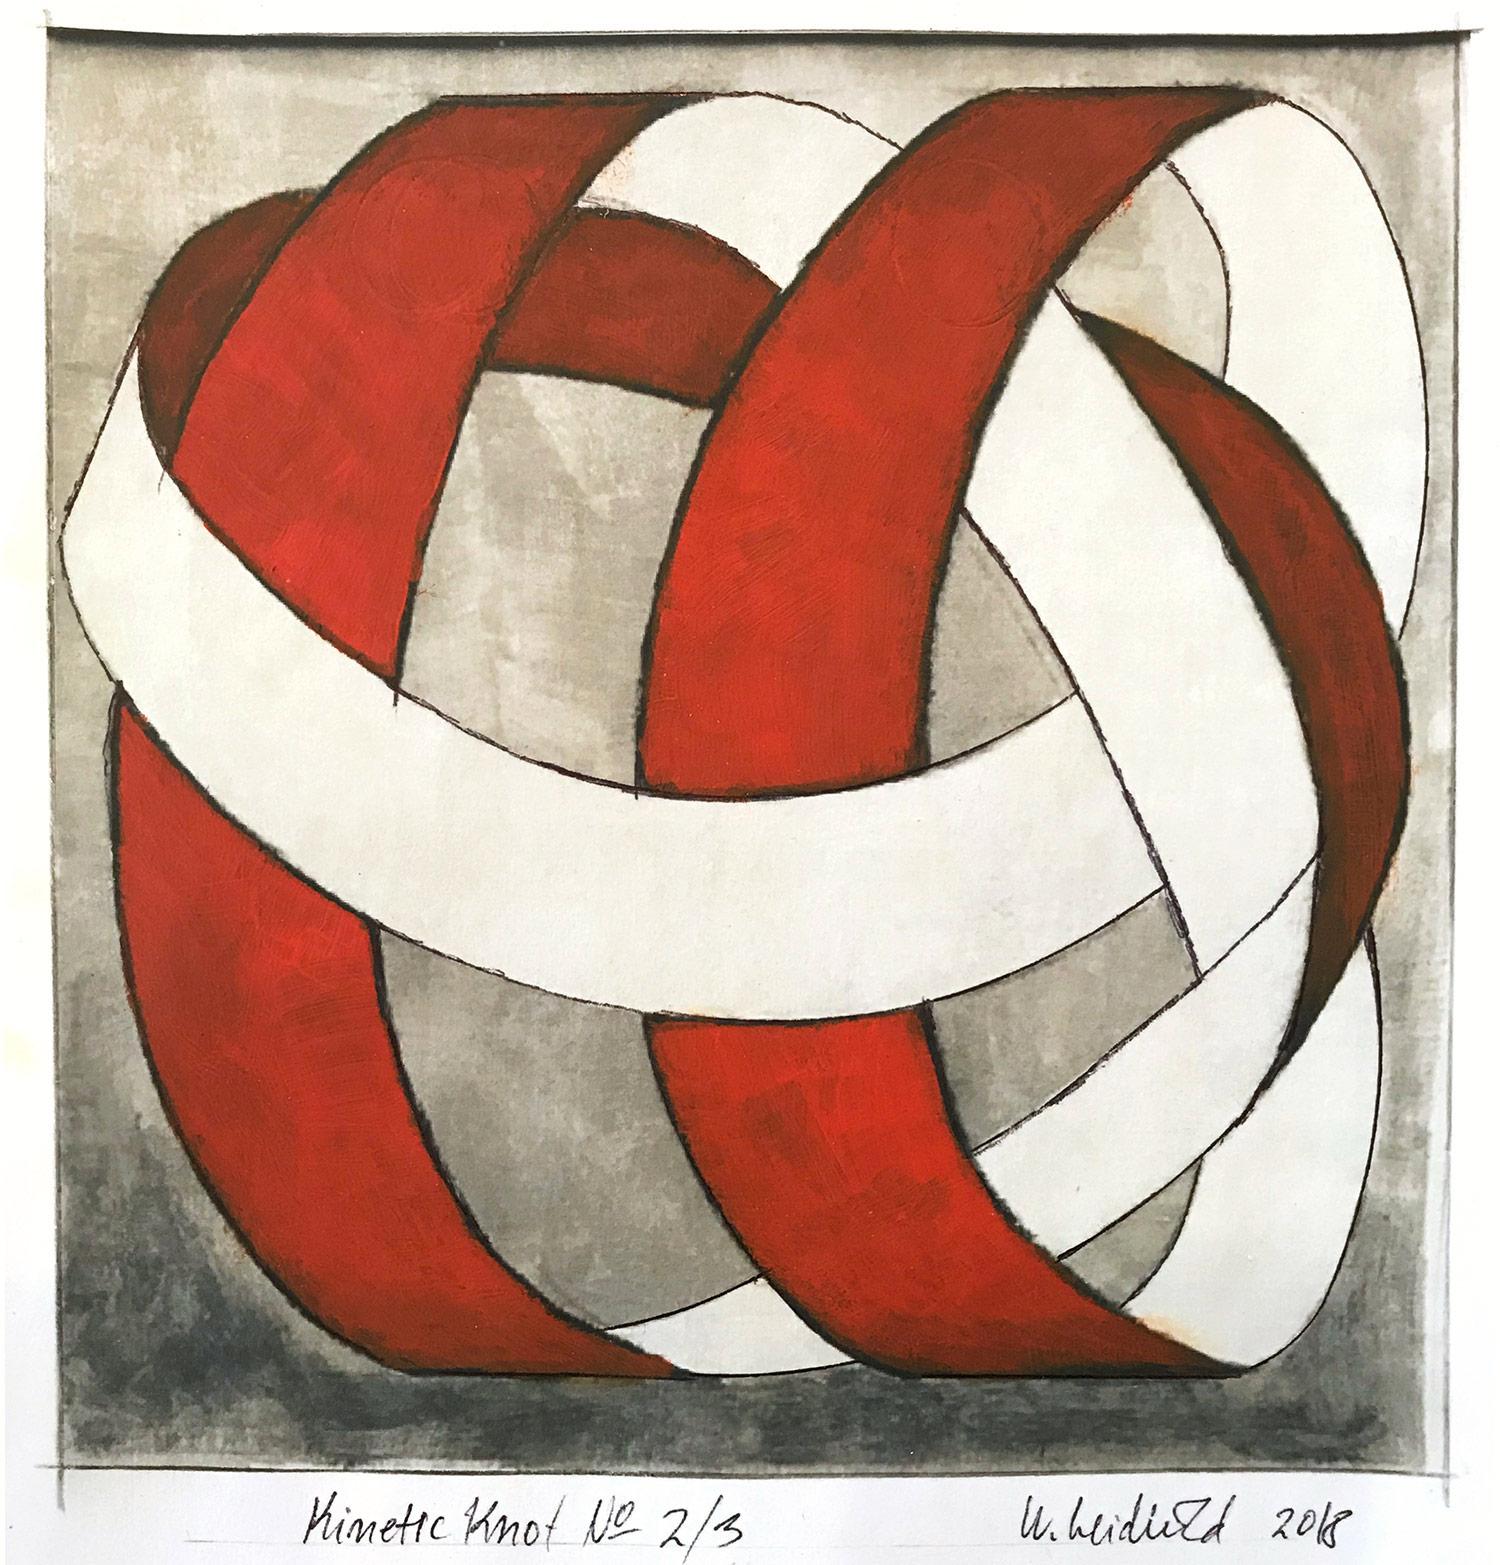 „Kinetic Knot No. 2/3“ Abstraktes, gegenständliches, gegenständliches Knotengemälde auf Papier – Painting von Wolfgang Leidhold